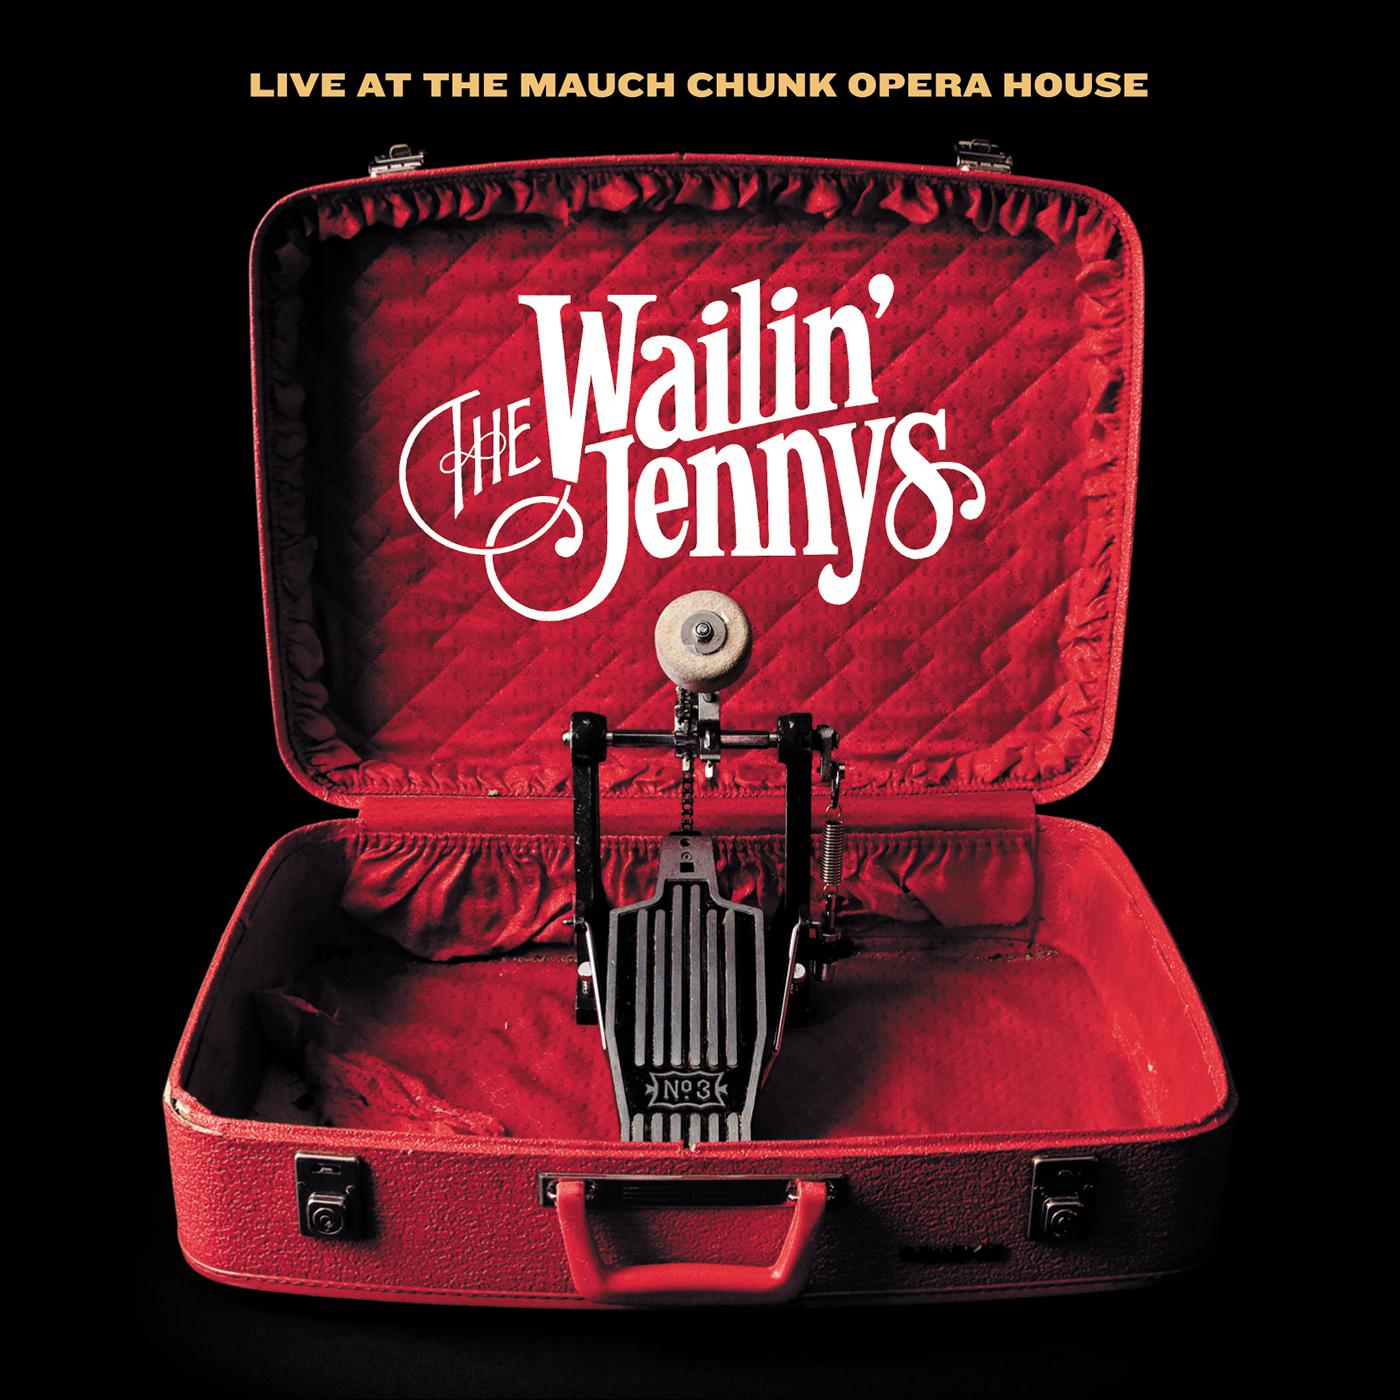 The Wailin' Jennys - Intro